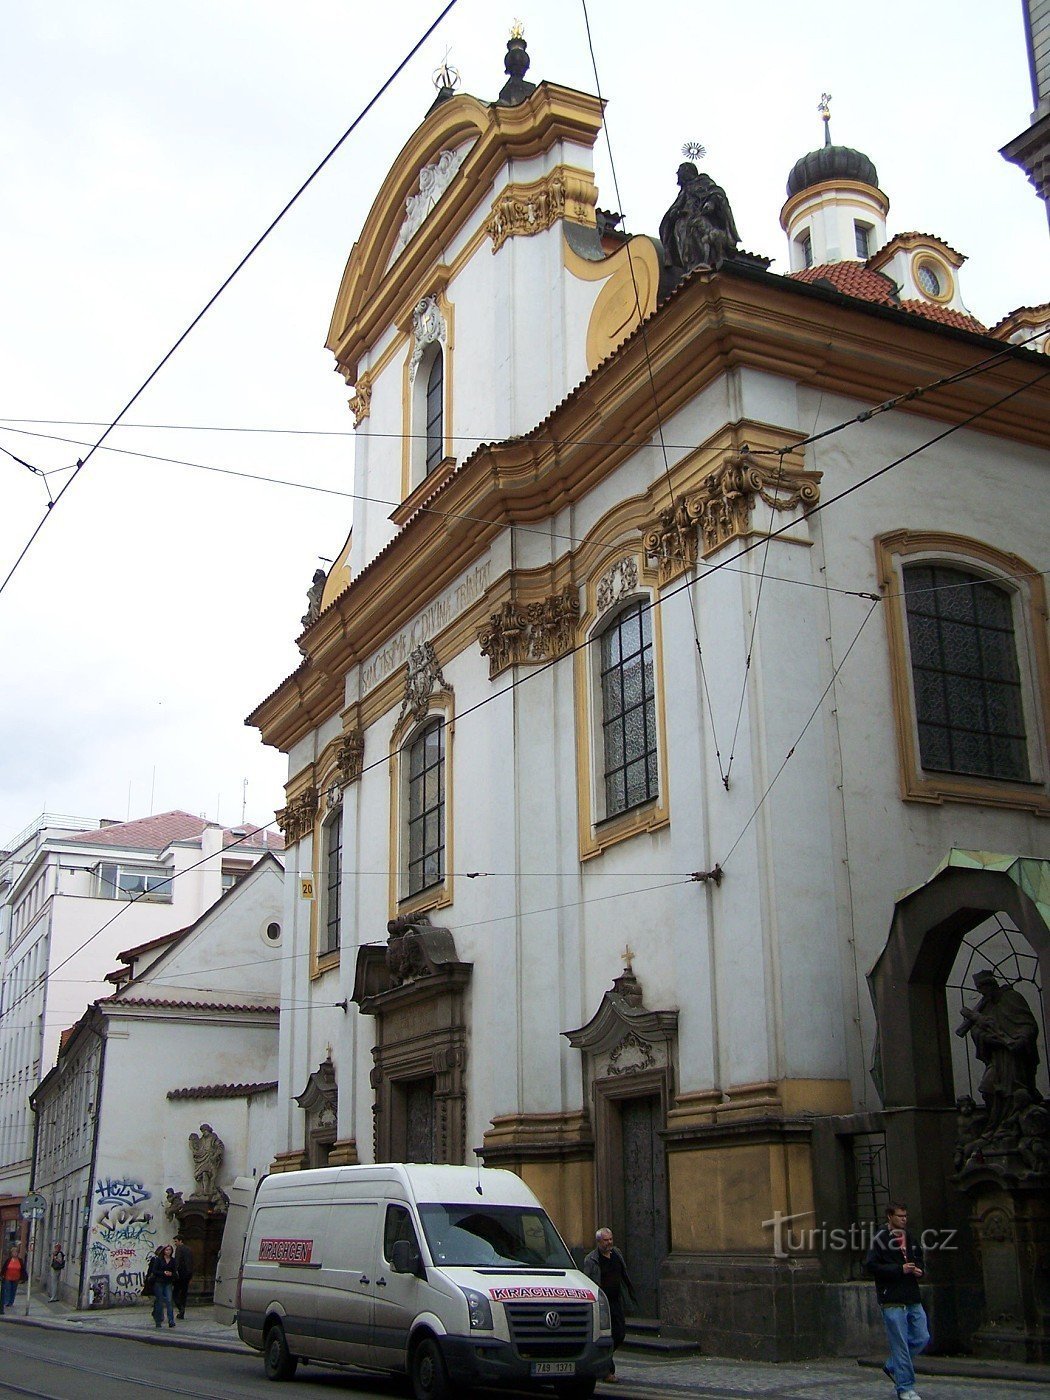 Prag - den heliga treenighetens kyrka